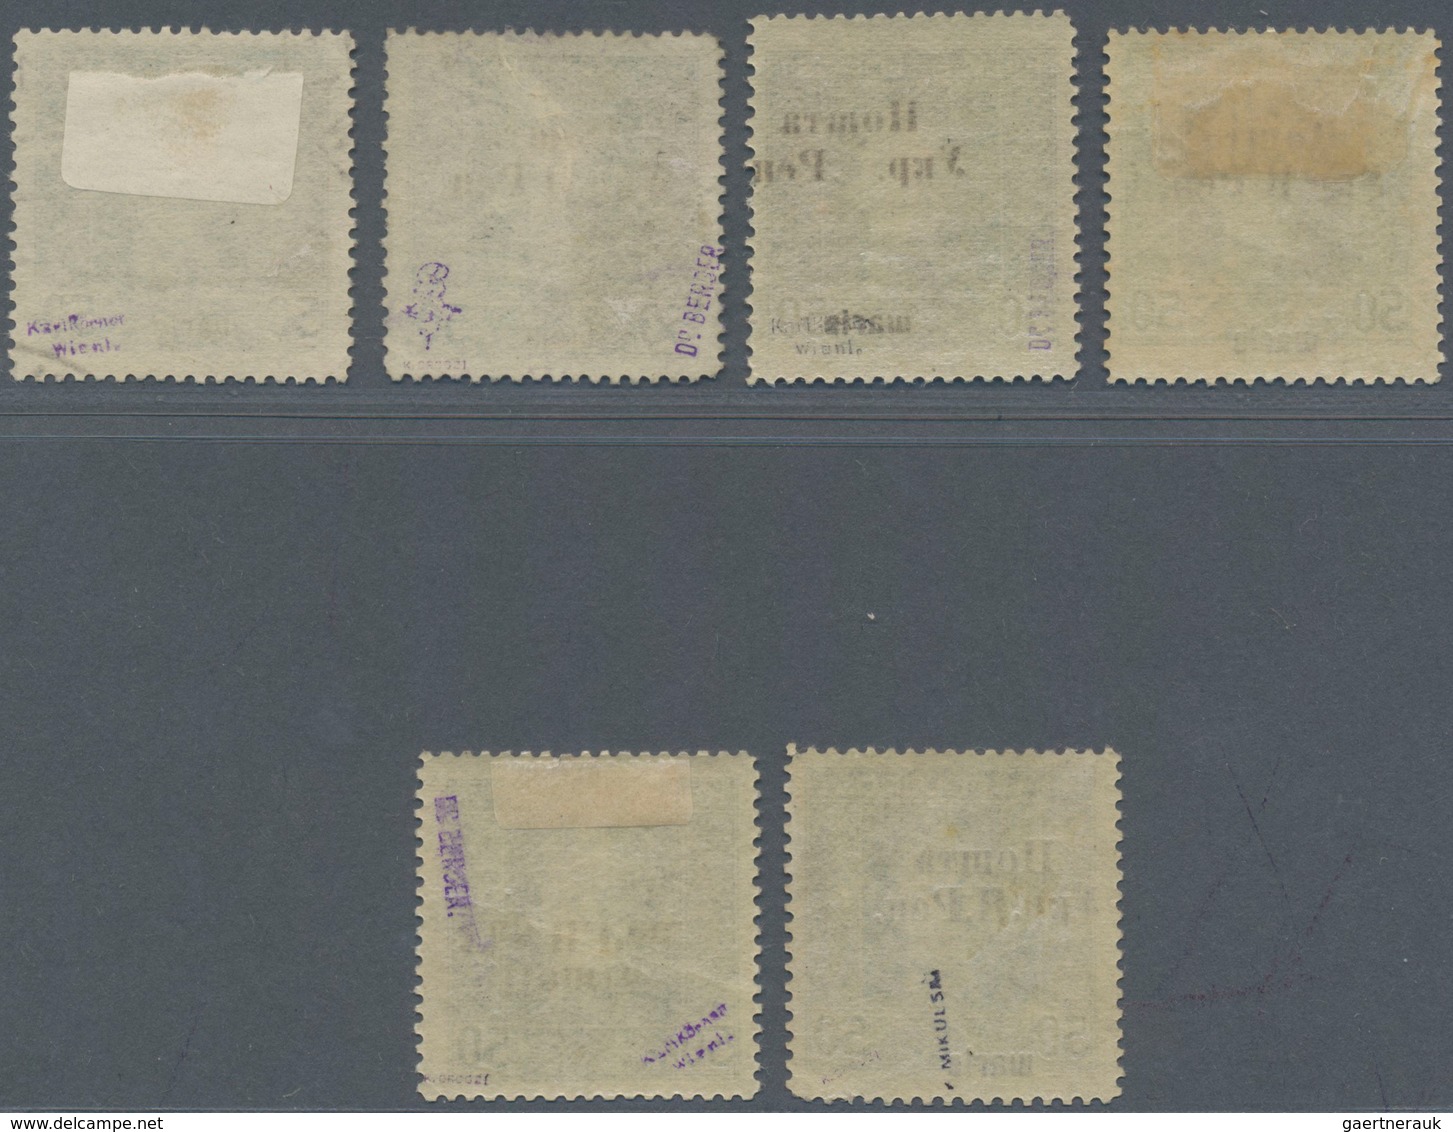 Westukraine: 1919, Postage Stamp. Austrian-Hungarian Field Post With Overprint 50 Schahi: Lot Of 6 V - Ukraine